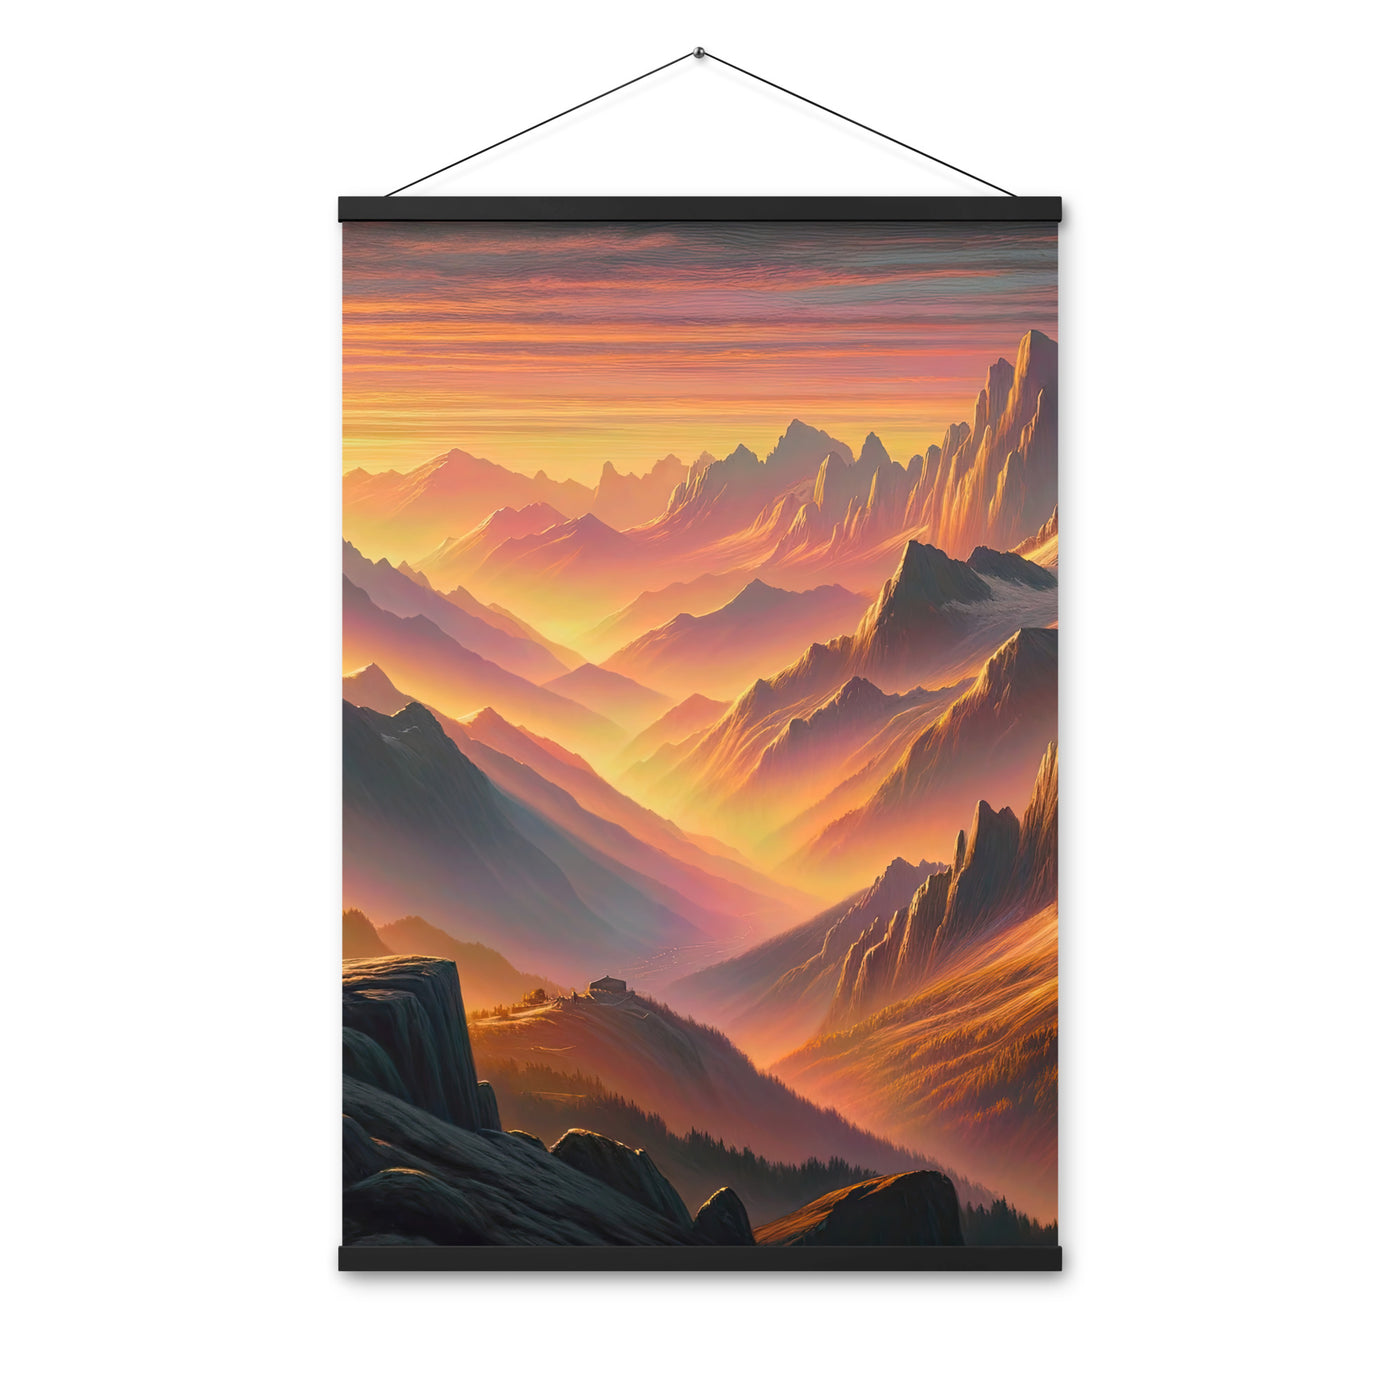 Ölgemälde der Alpen in der goldenen Stunde mit Wanderer, Orange-Rosa Bergpanorama - Premium Poster mit Aufhängung wandern xxx yyy zzz 61 x 91.4 cm